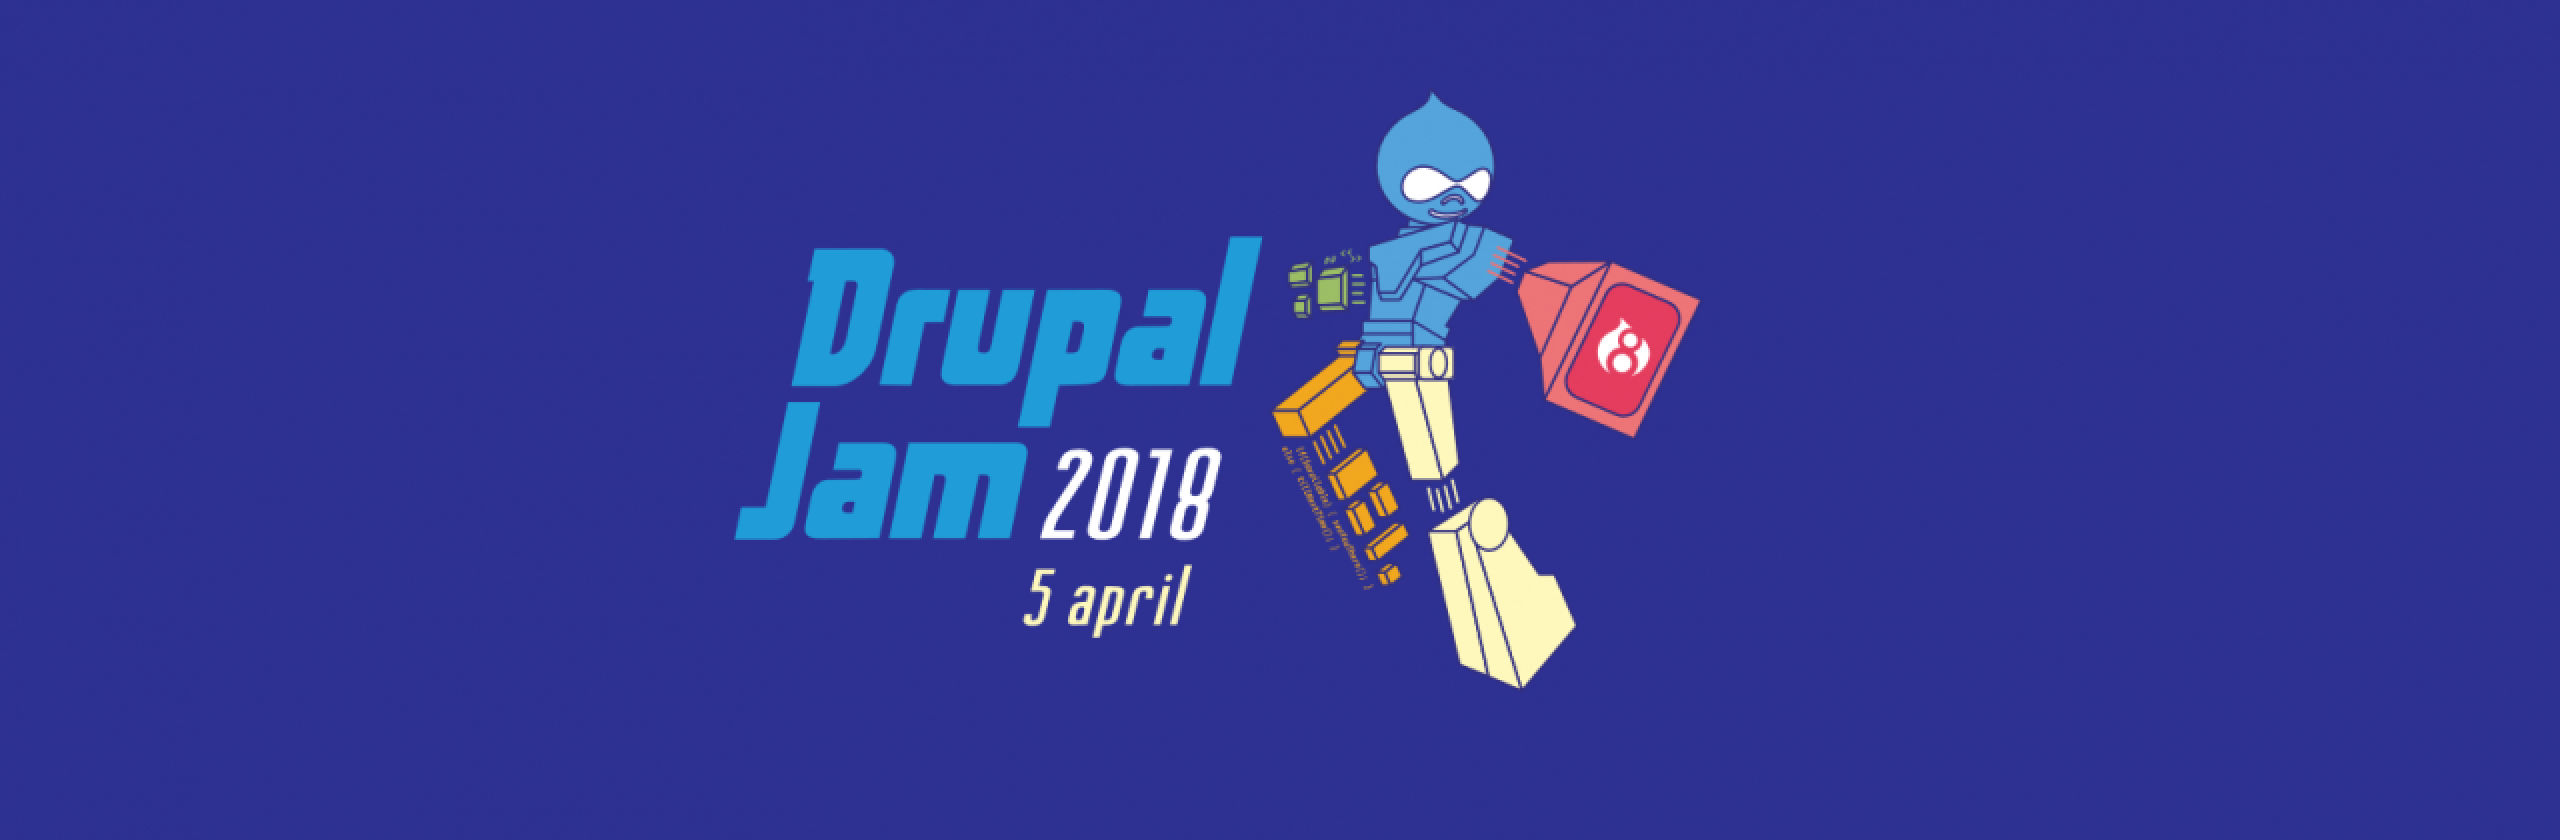 DrupalJam 2018